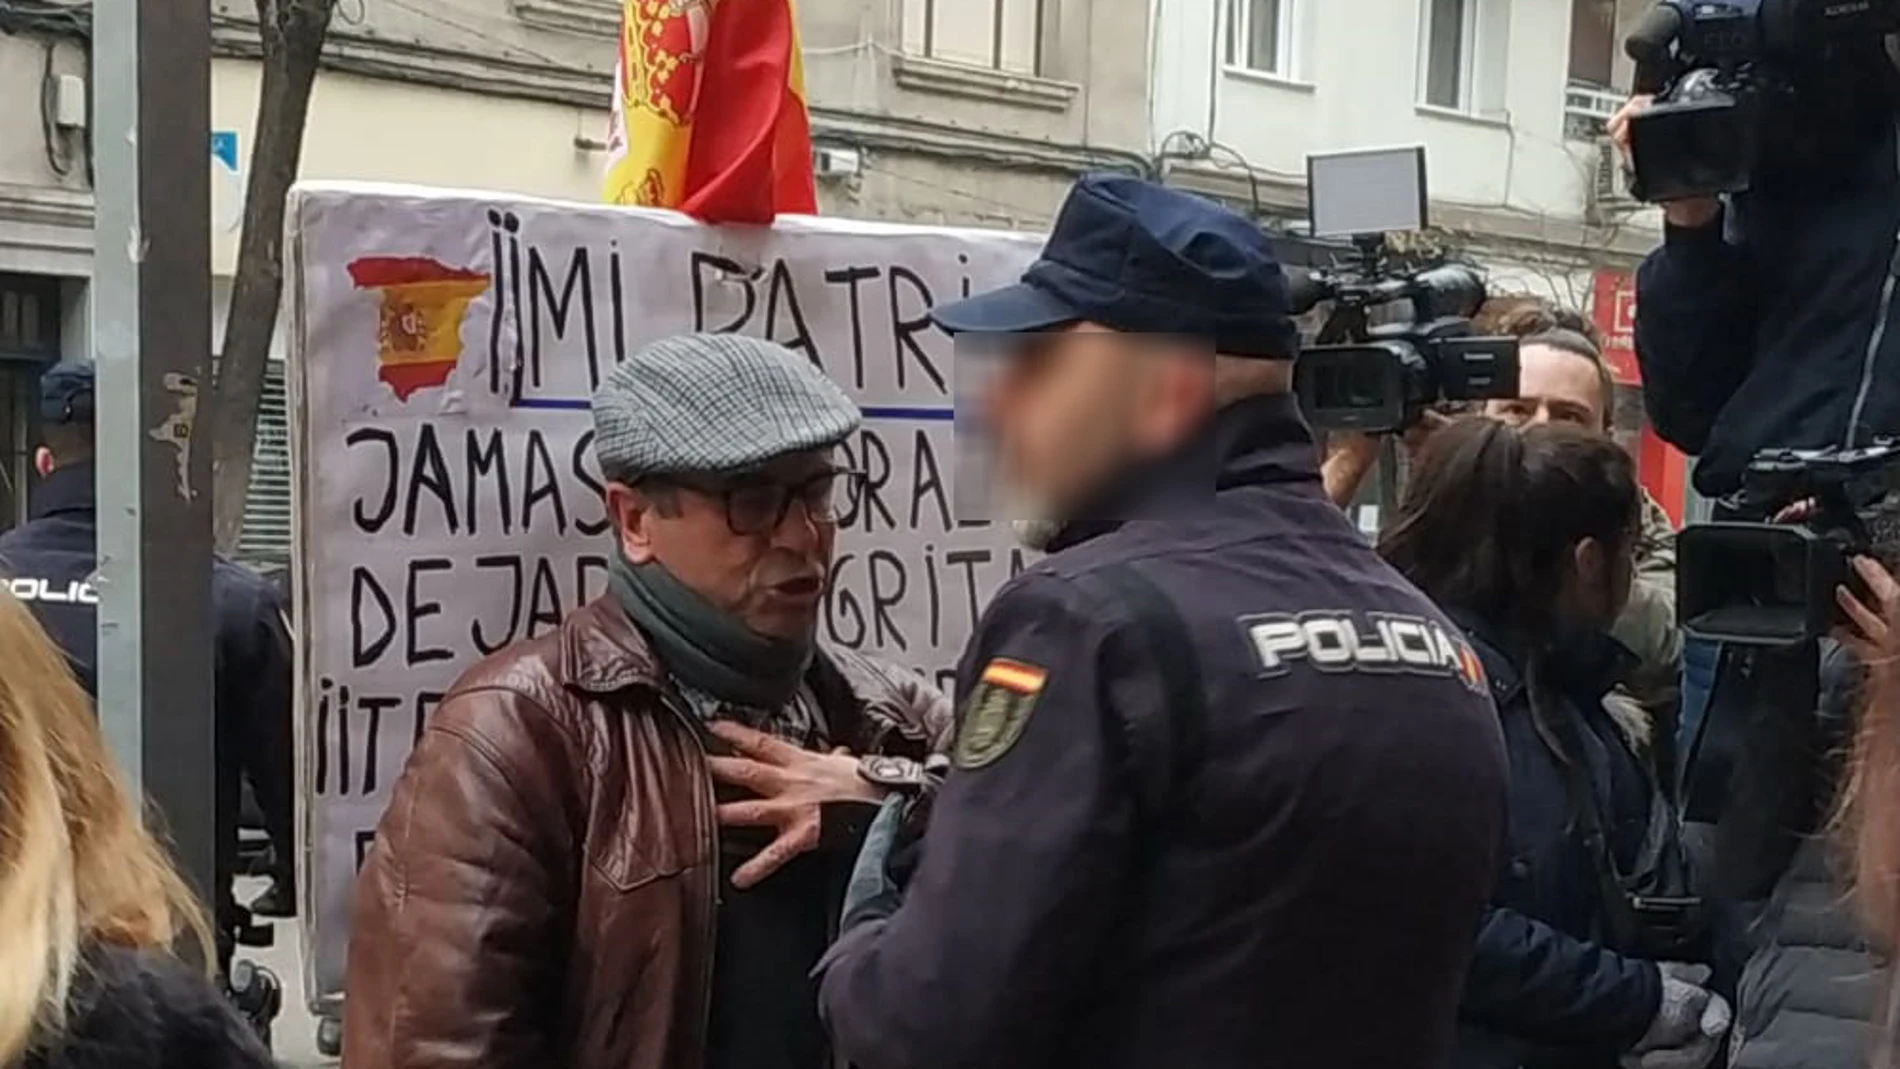 El hombre, que llevaba la bandera de España, fue desalojado por la Policía